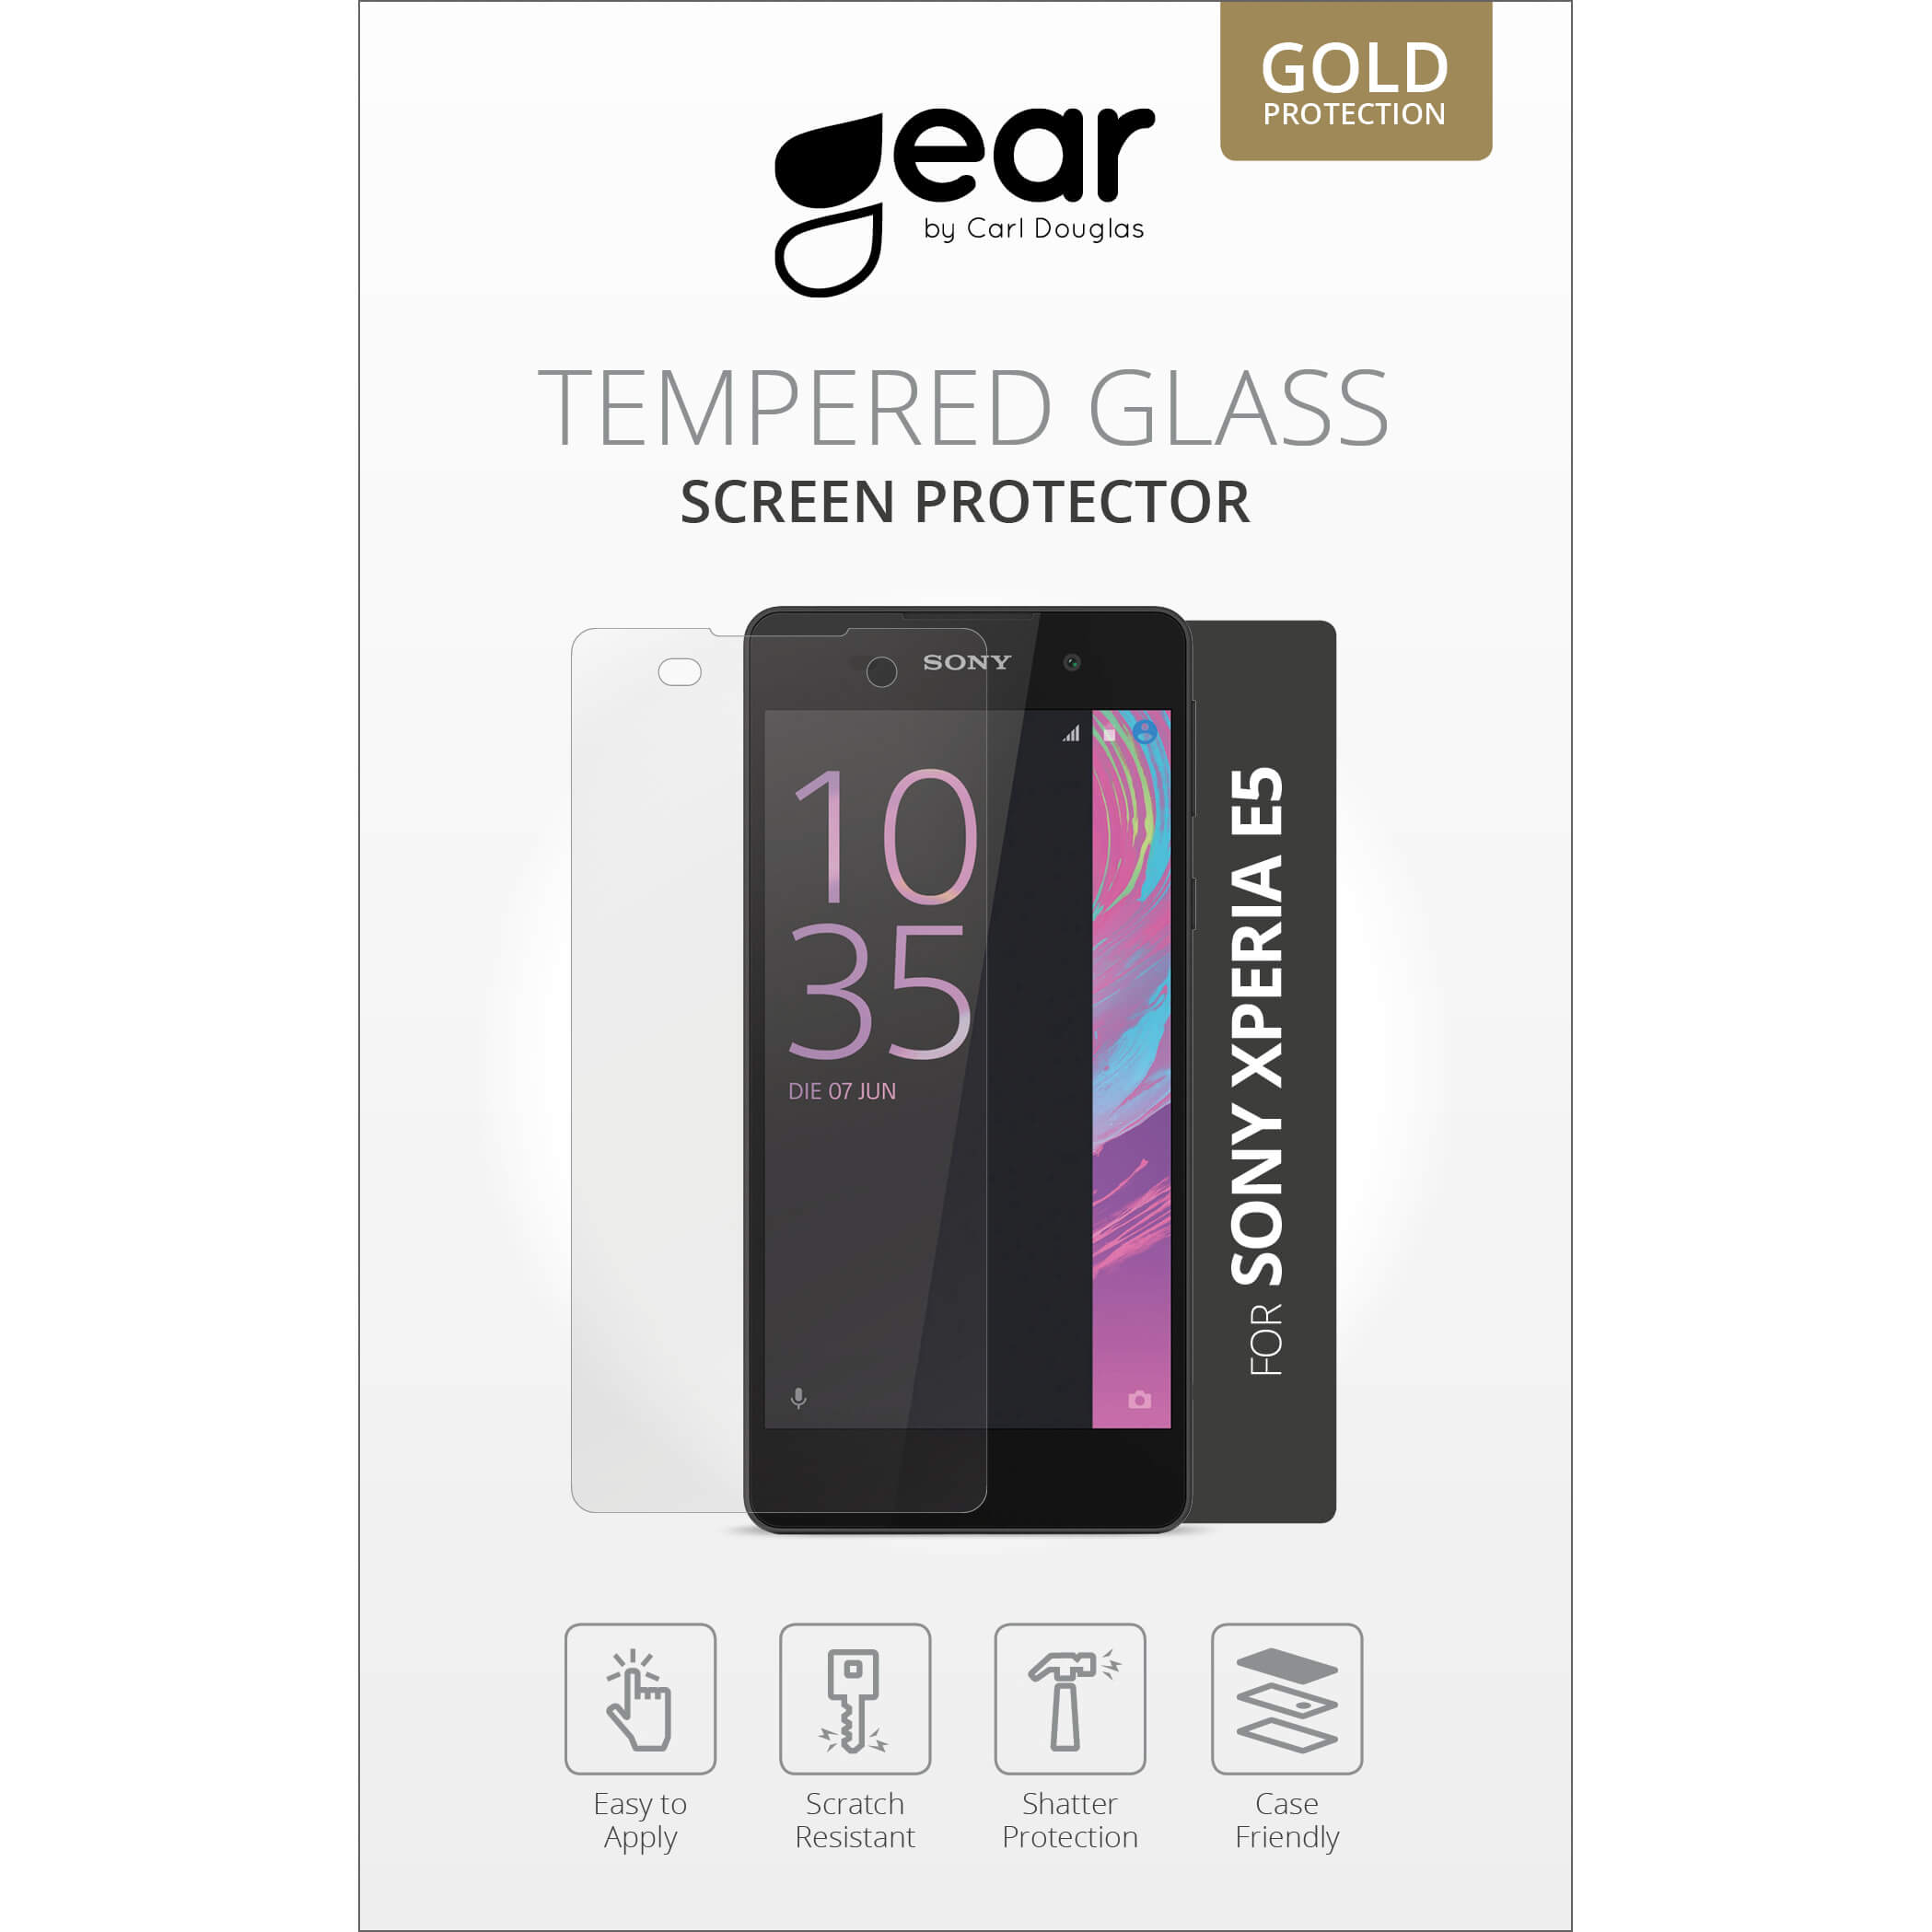 Glass Prot. 5" Xperia E5